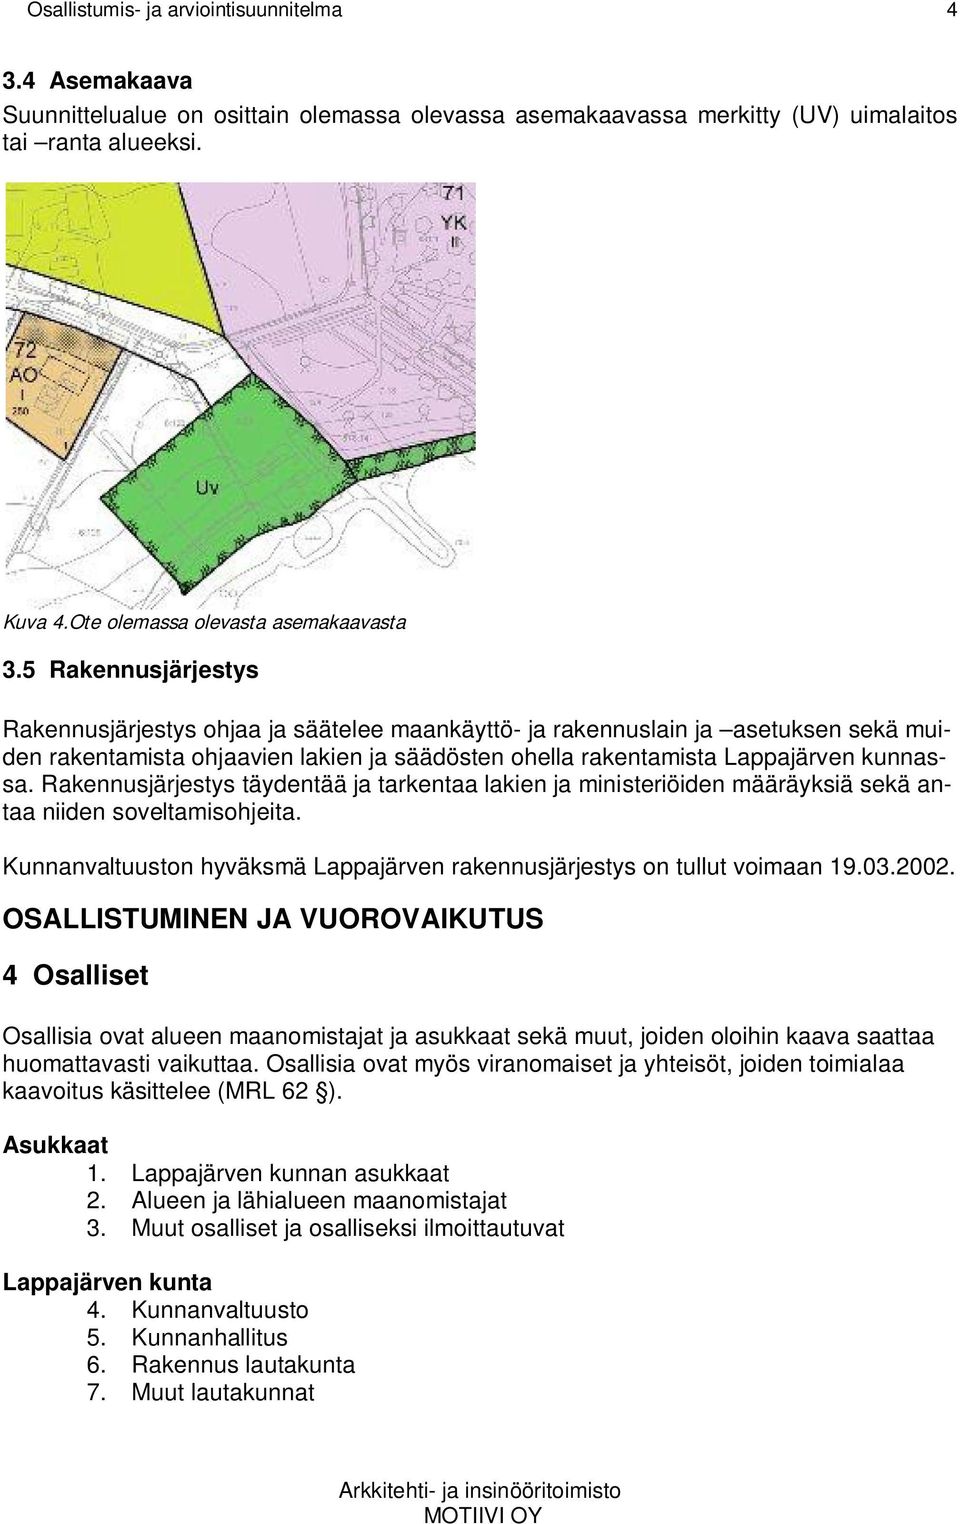 5 Rakennusjärjestys Rakennusjärjestys ohjaa ja säätelee maankäyttö- ja rakennuslain ja asetuksen sekä muiden rakentamista ohjaavien lakien ja säädösten ohella rakentamista Lappajärven kunnassa.